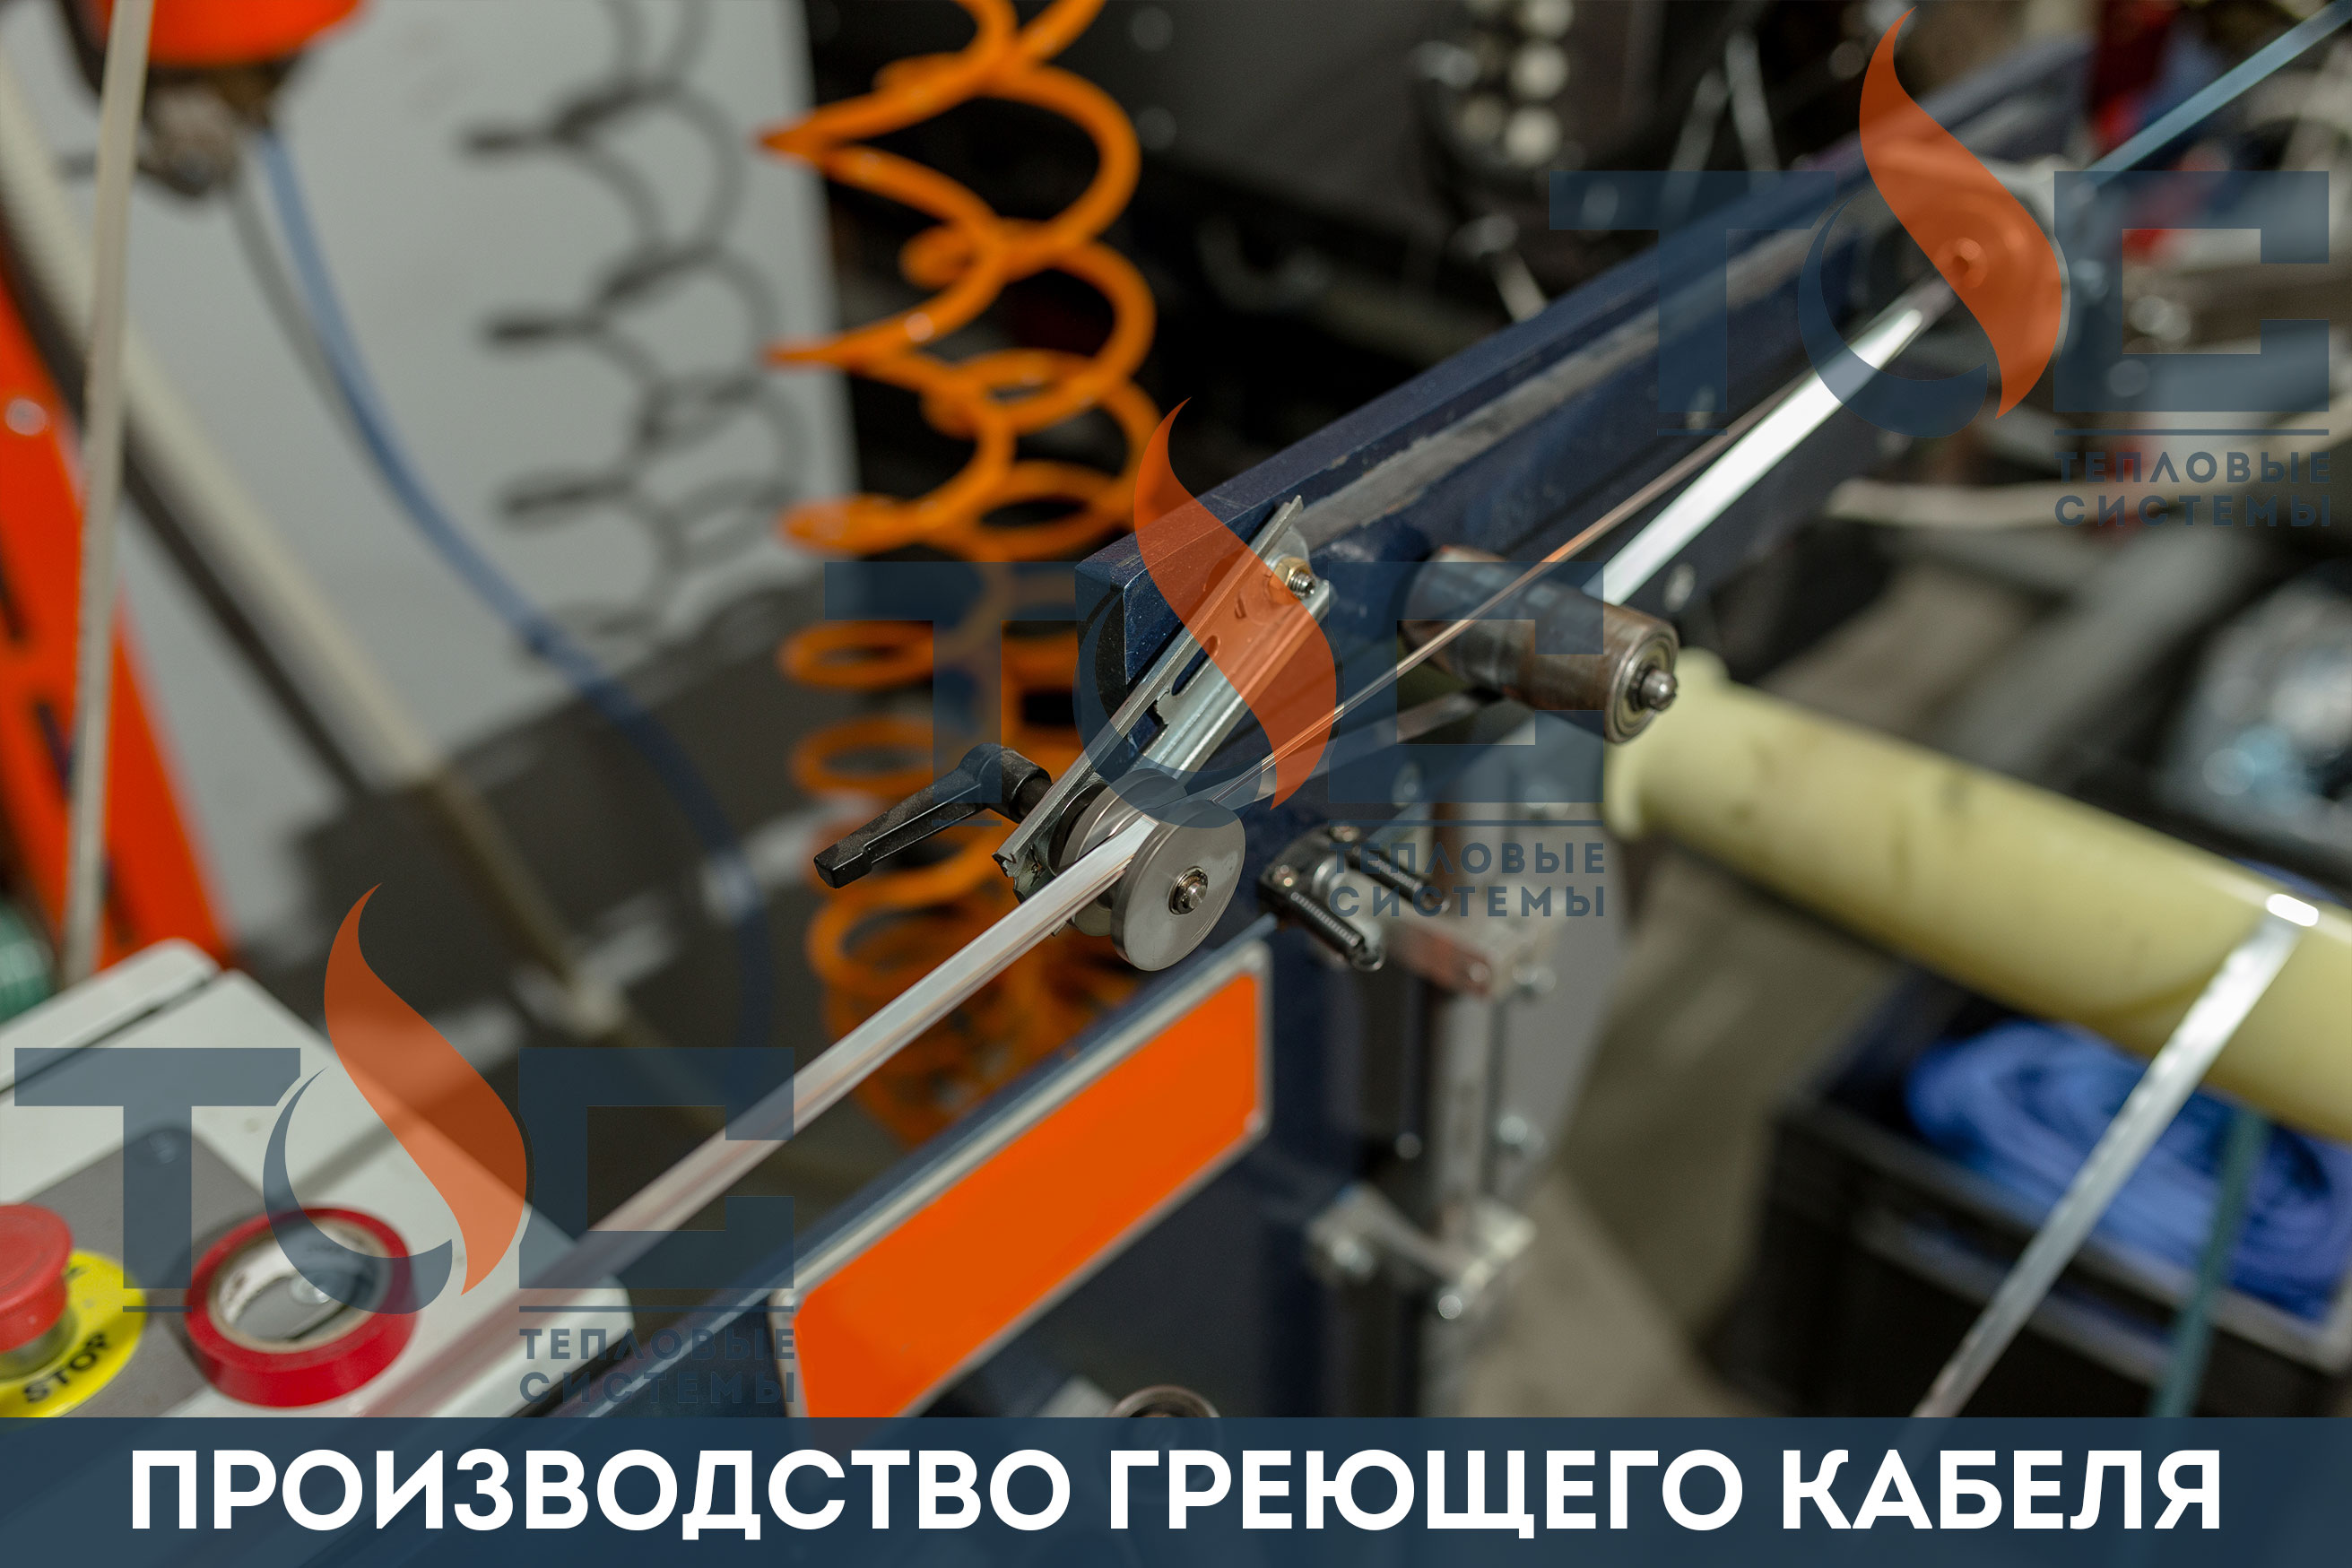 Производство греющего кабеля ведется на собственном оборудовании